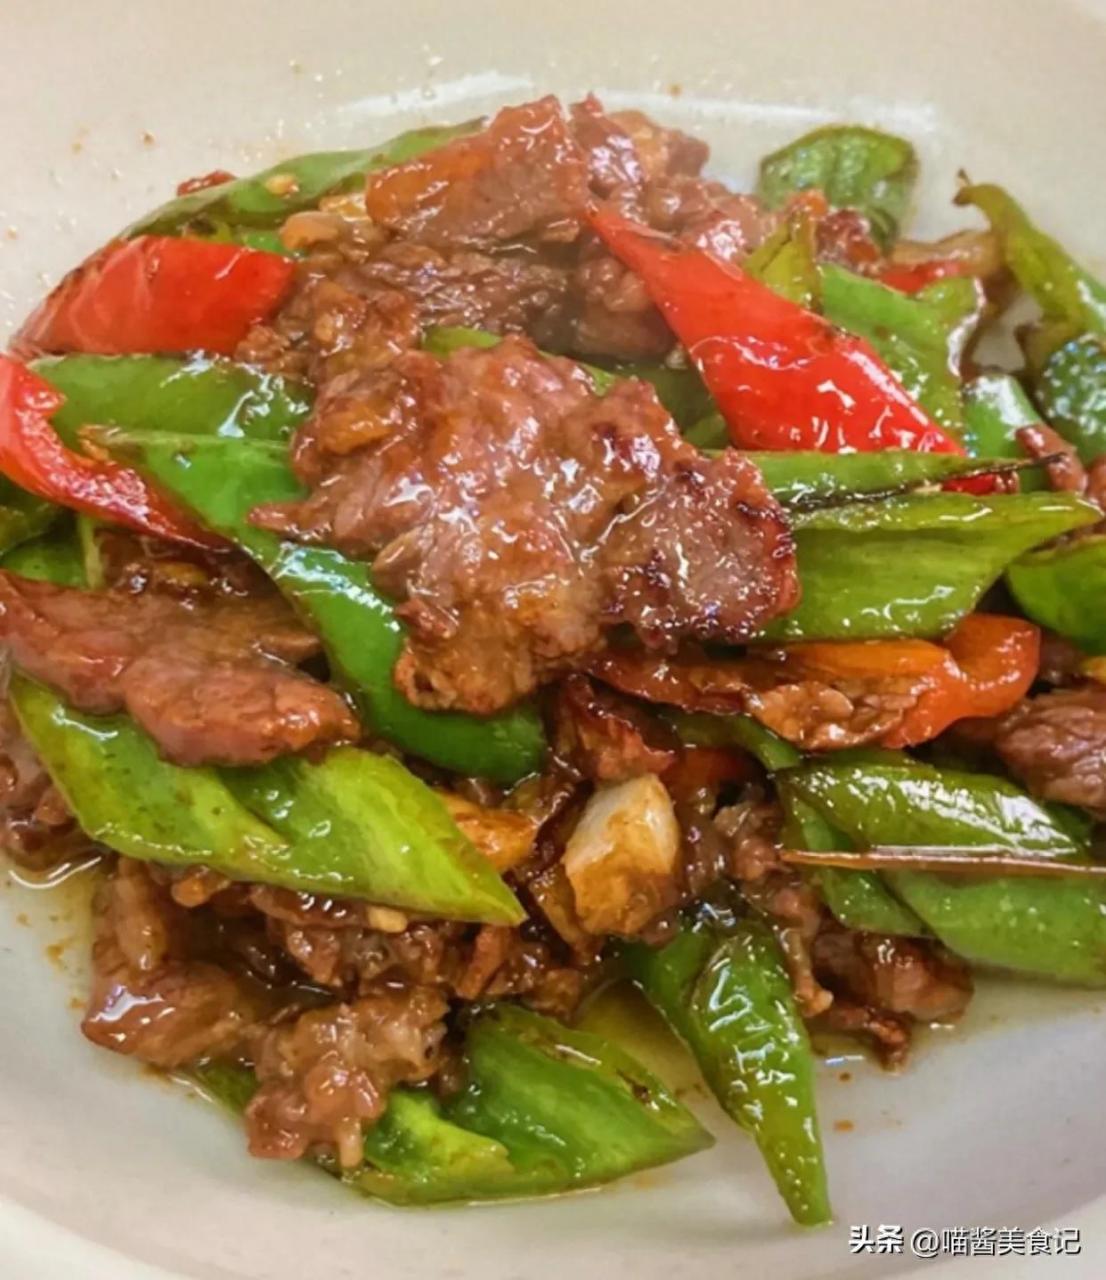 青椒炒牛肉的做法及腌制牛肉的详细步骤，口感鲜美营养丰富